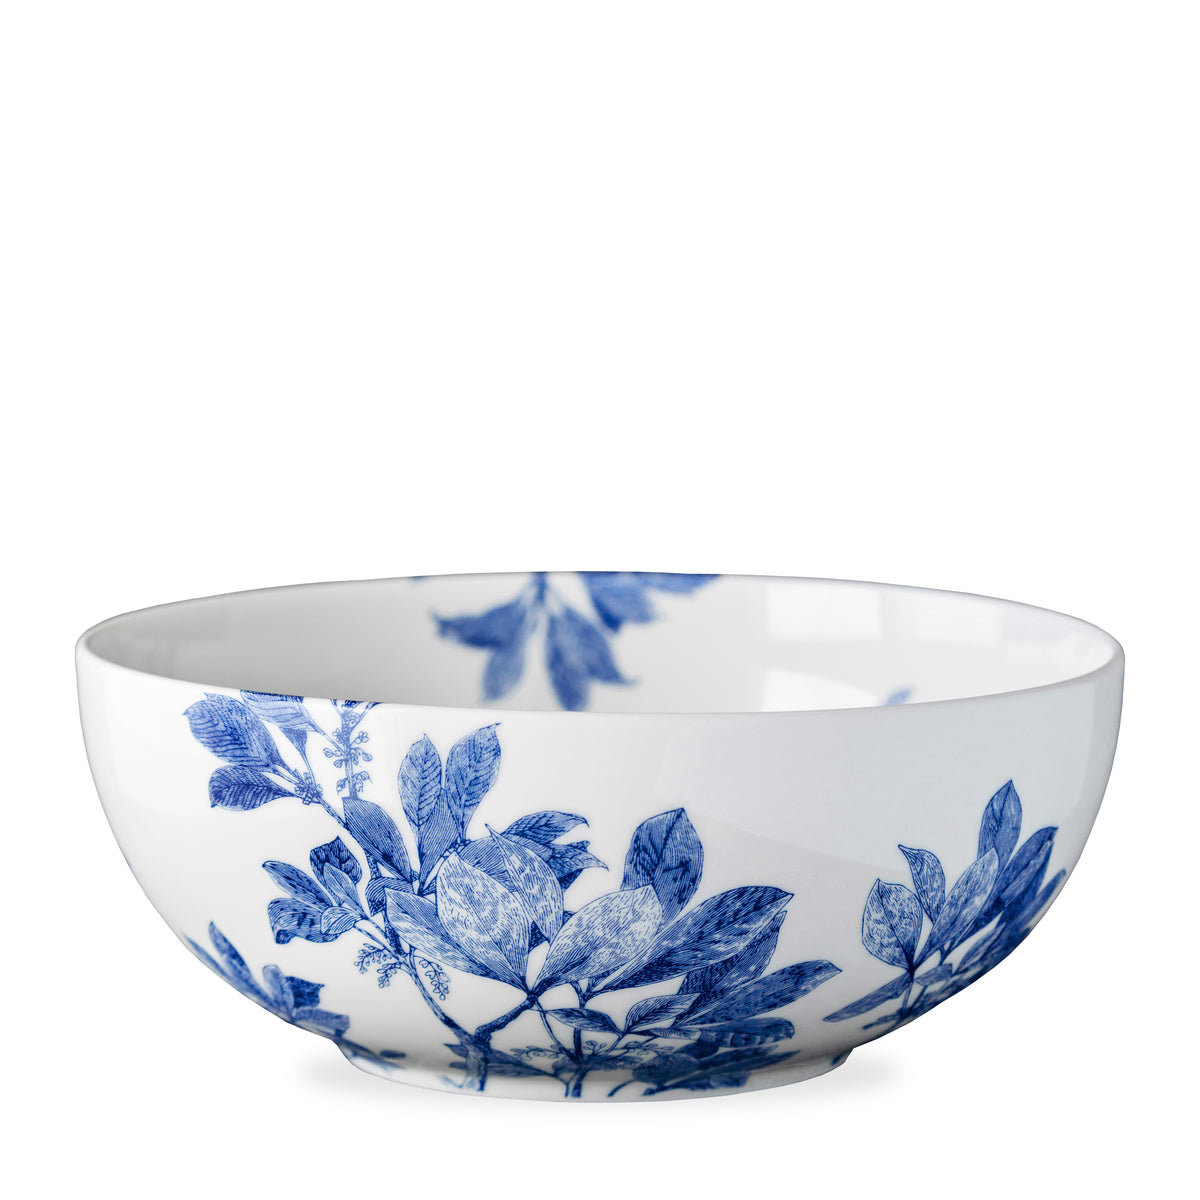 Caskata Artisanal Home&#39;s Arbor Vegetable Serving Bowl with a blue floral and leaf design, crafted from premium porcelain. Dishwasher safe.